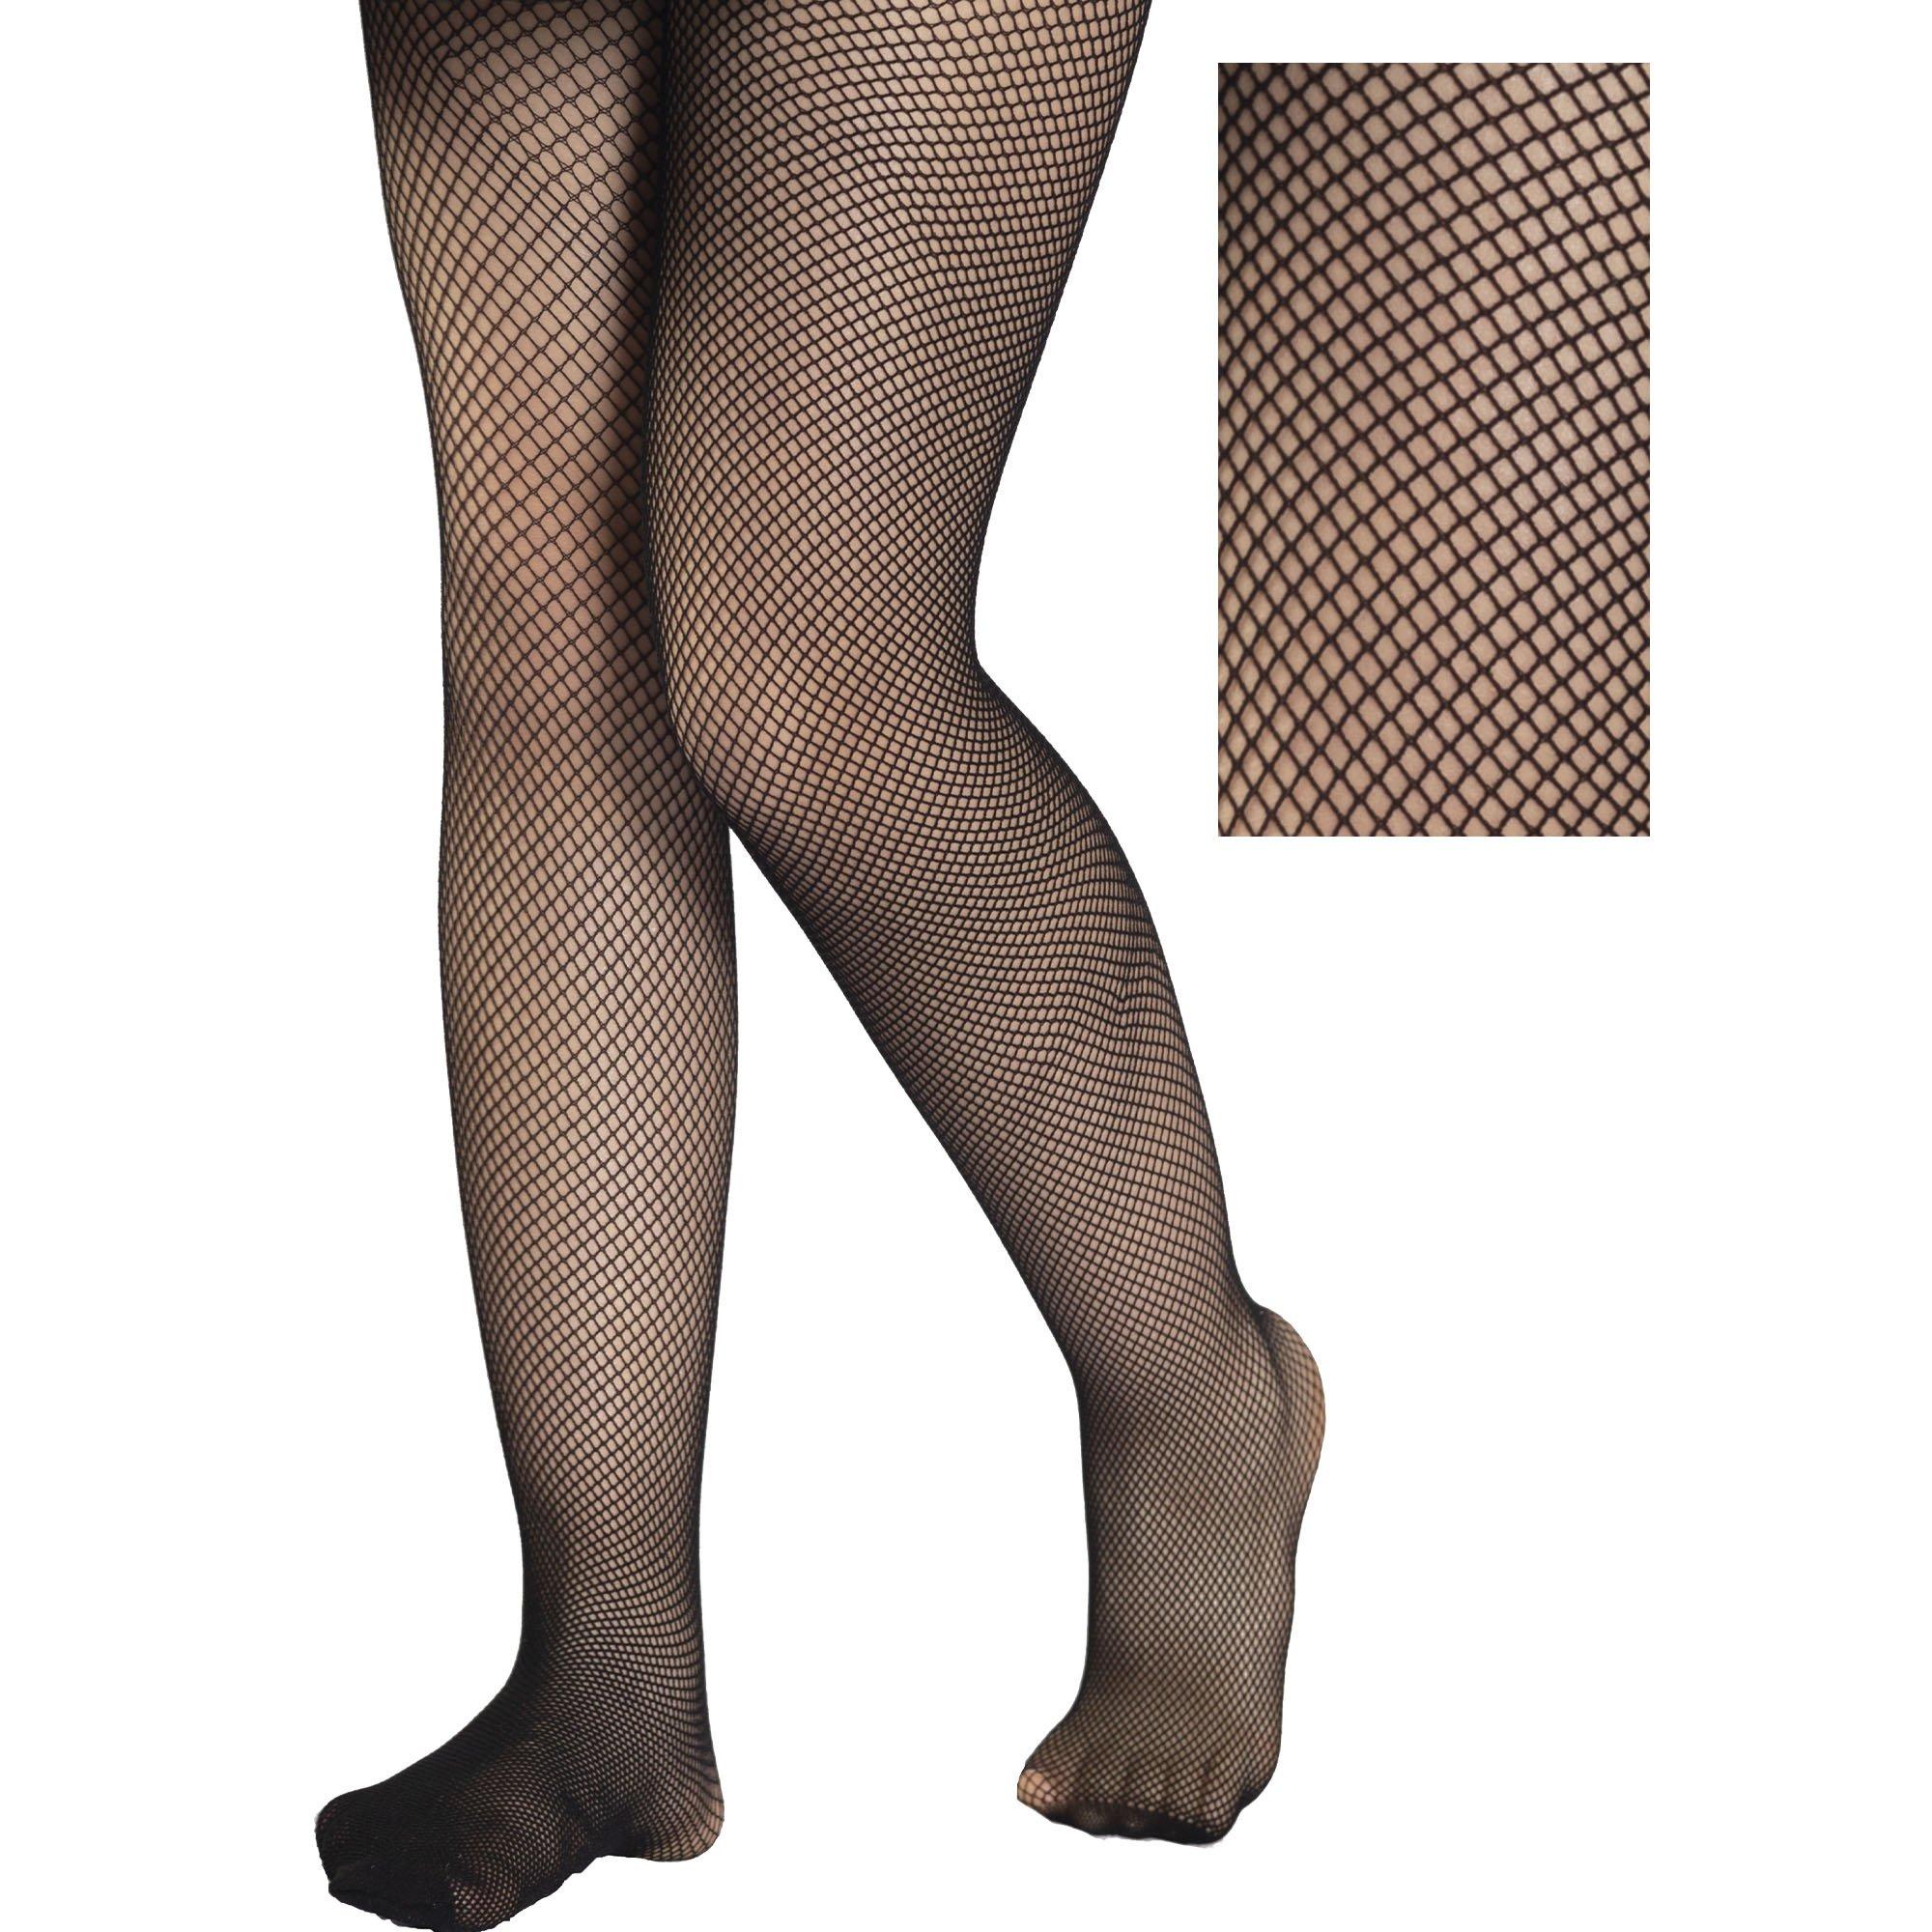 Black fishnet tights for women